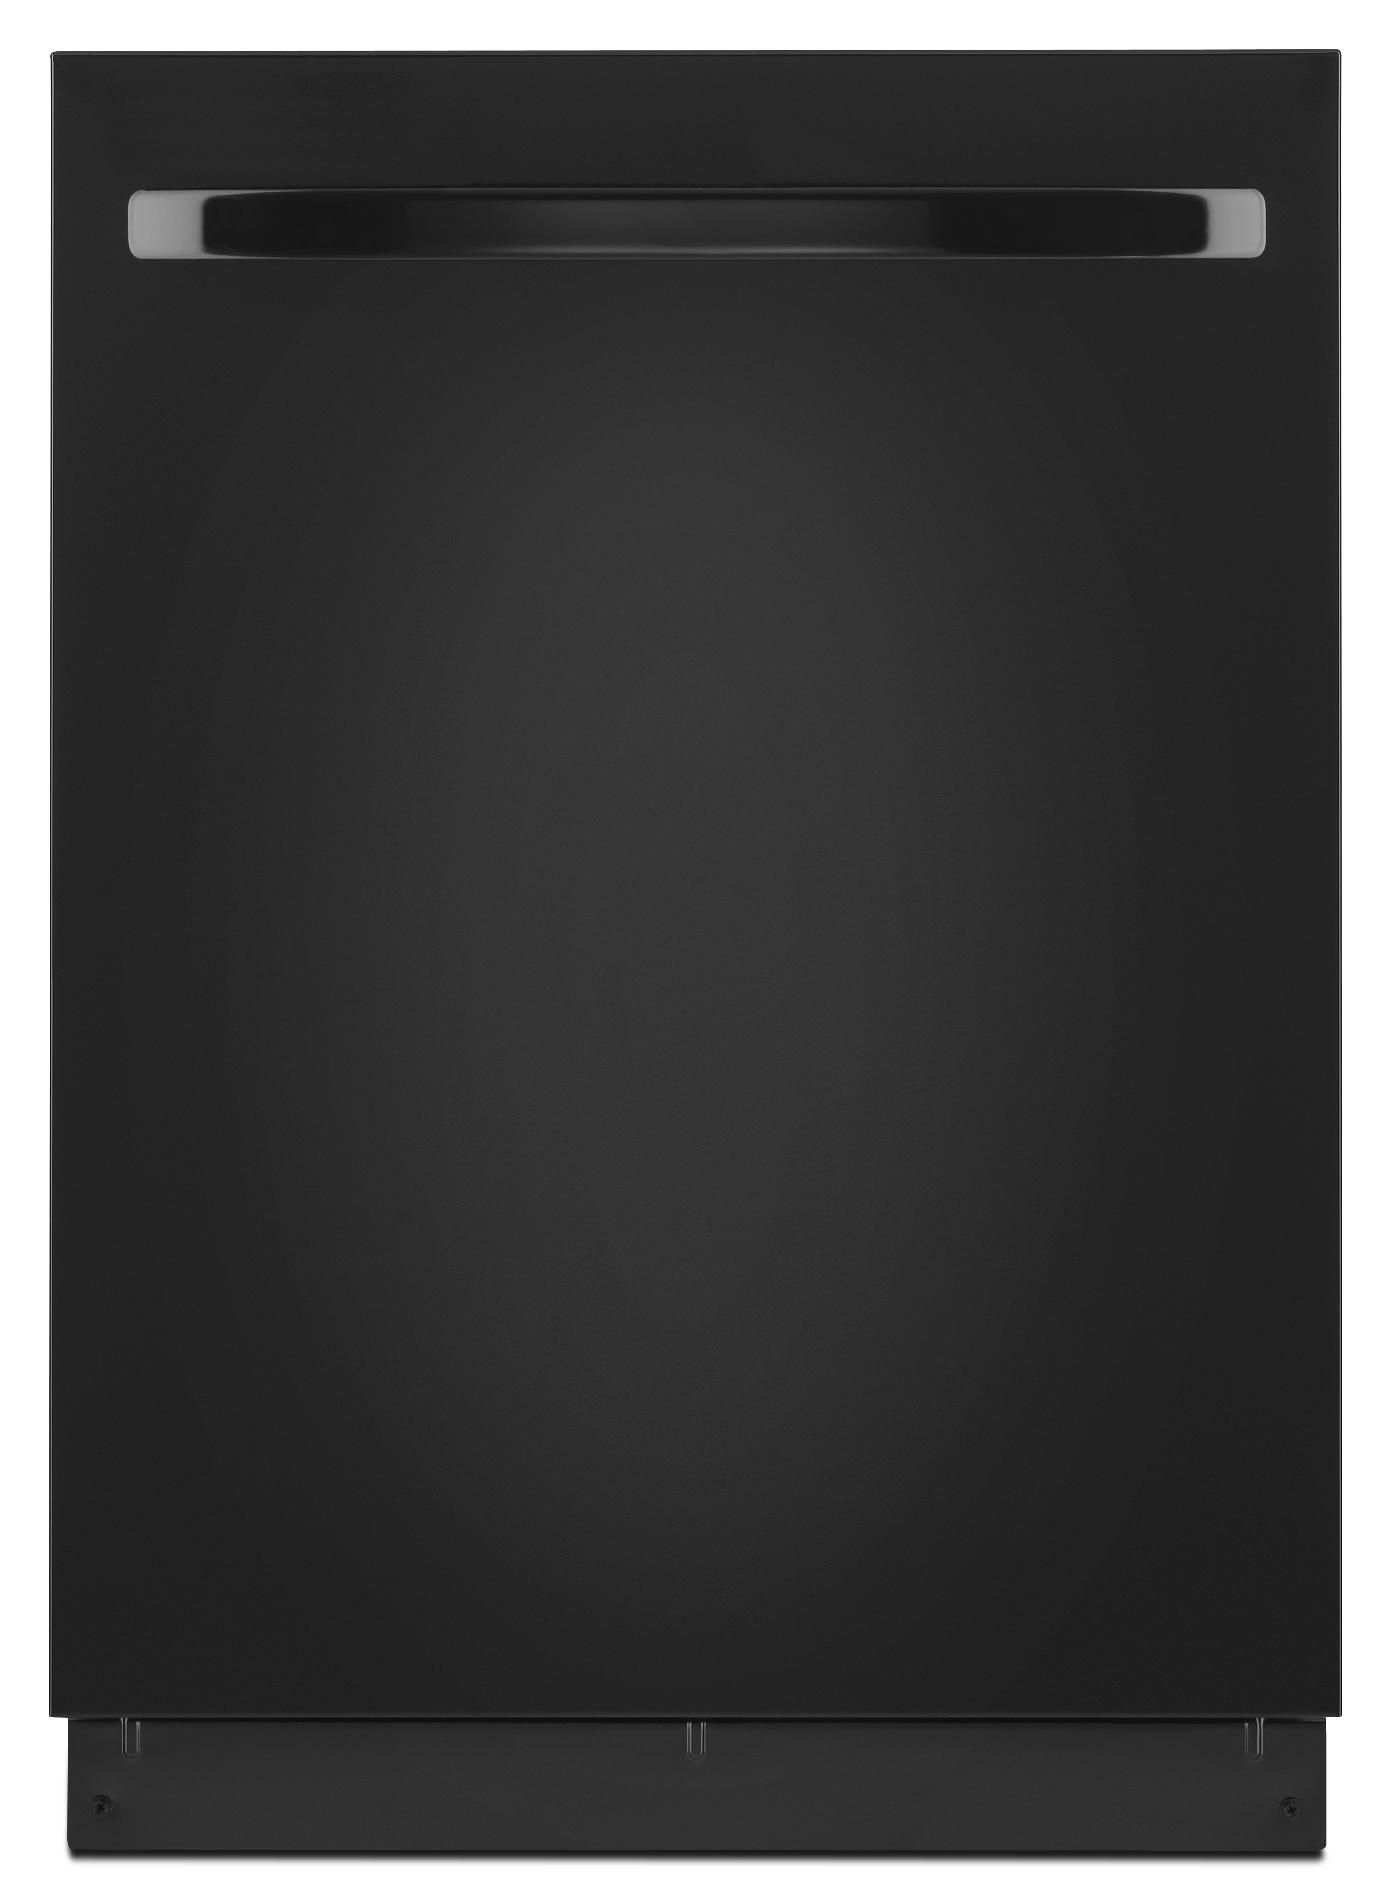 Undercounter Dishwasher logo